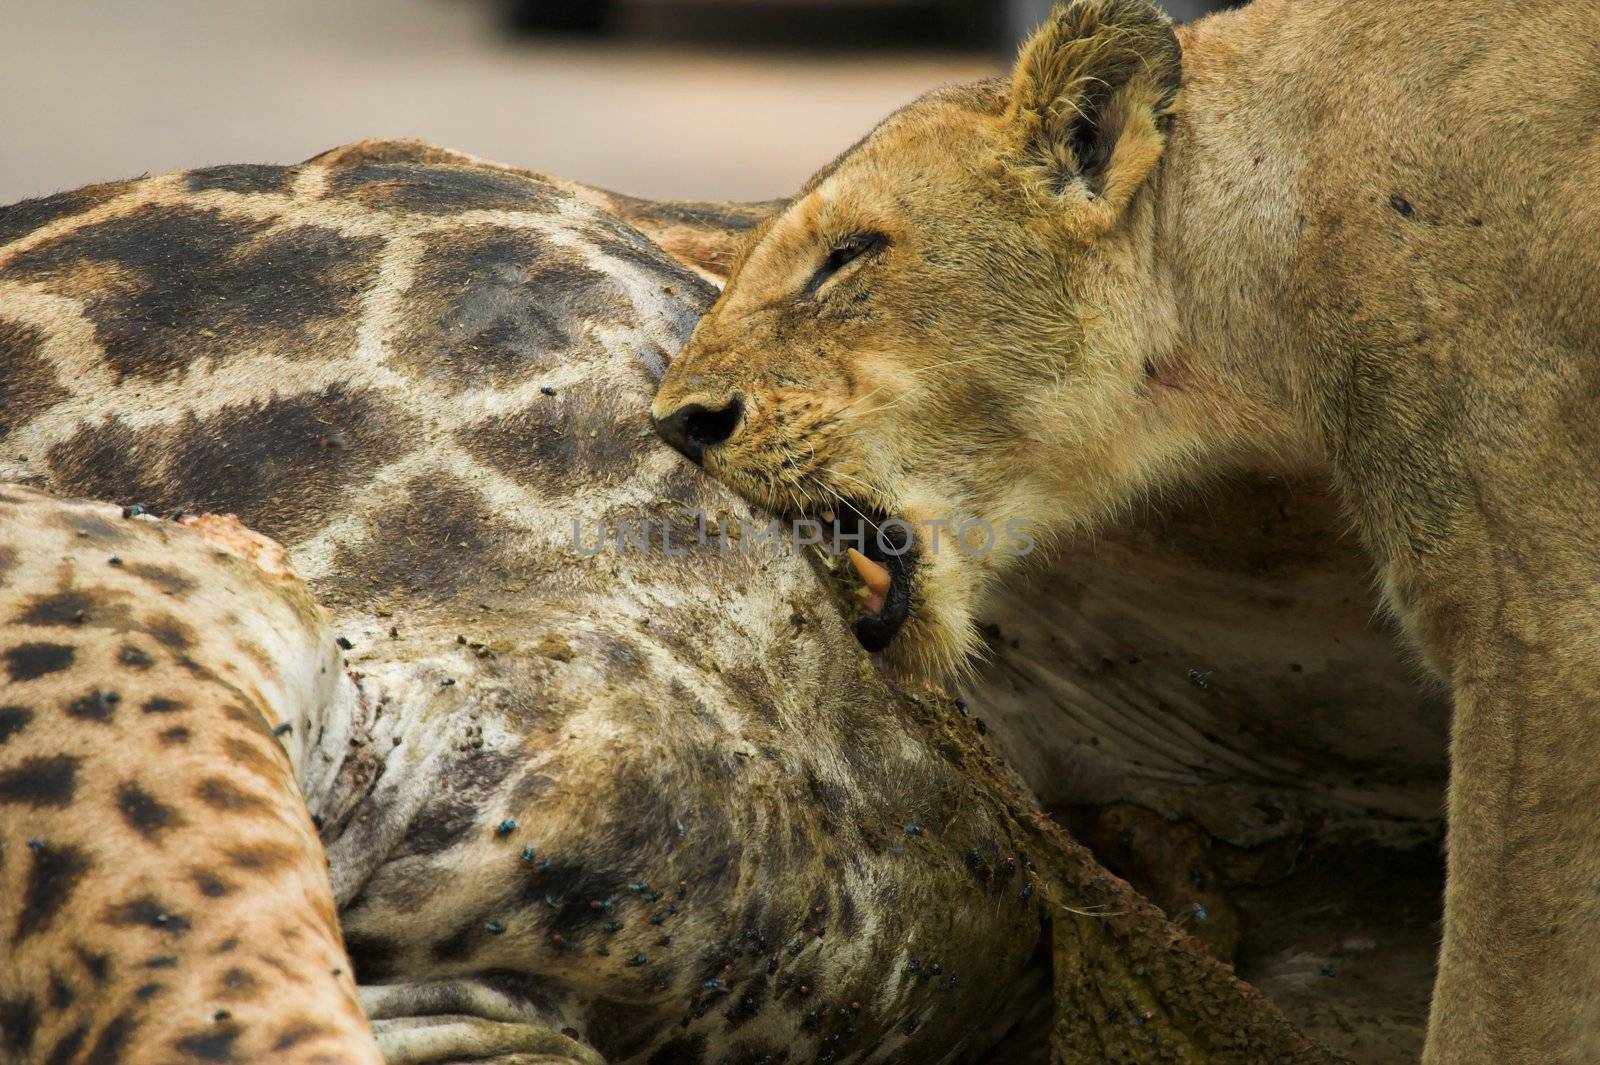 Lioness feeding on a giraffe kill by nightowlza